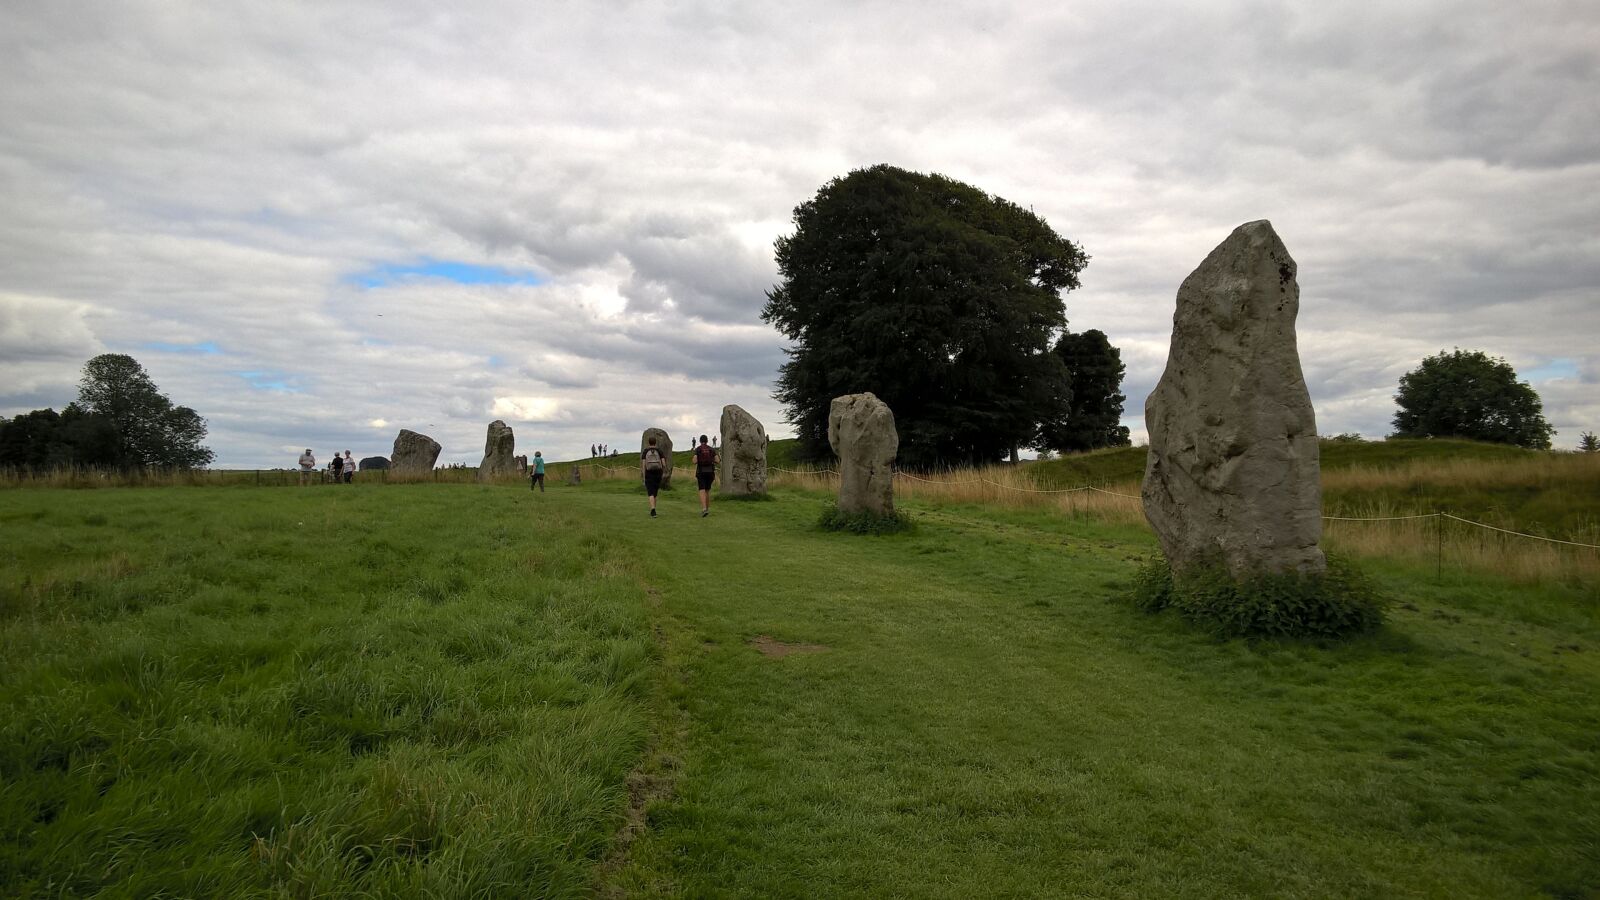 Nokia Lumia 830 sample photo. Avebury, stone circle, neolithic photography